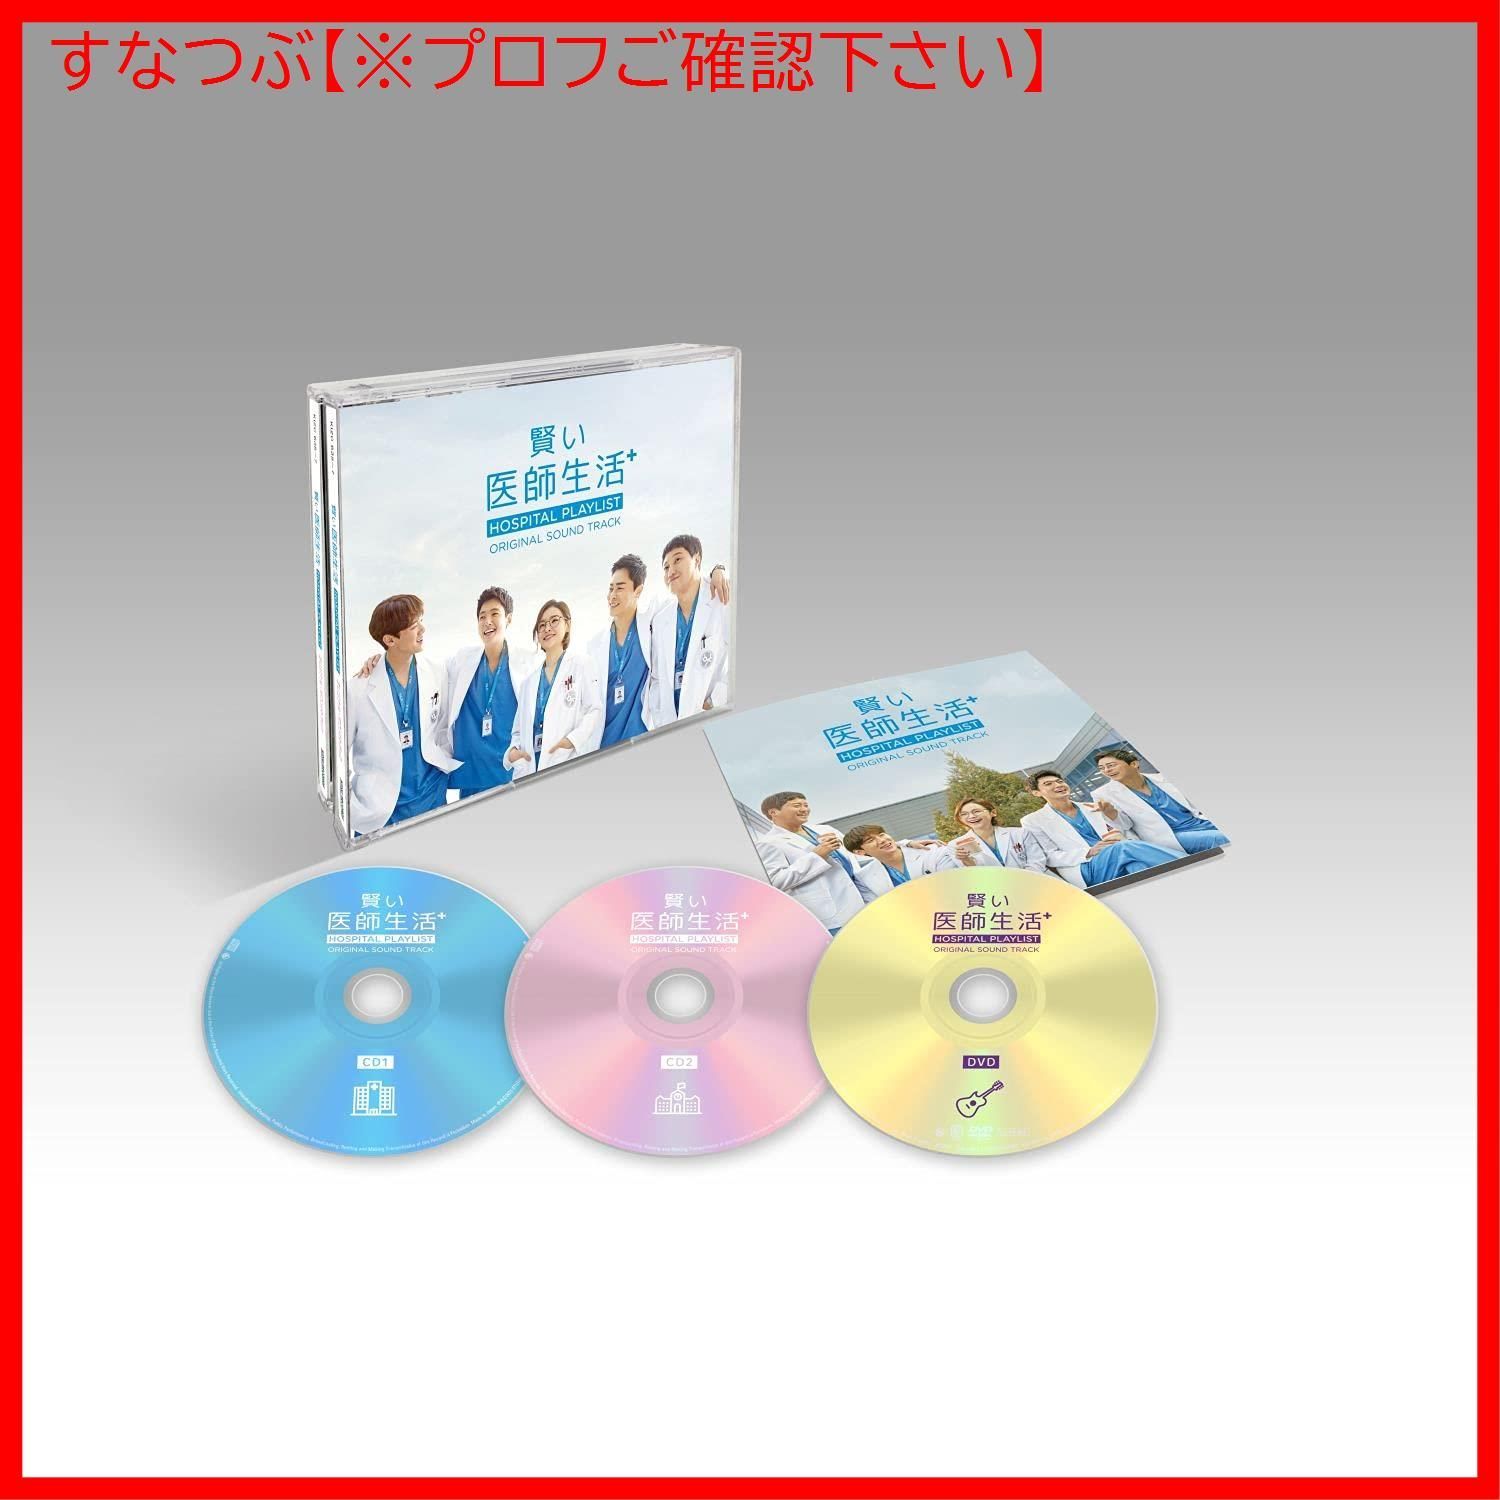 【新品未開封】賢い医師生活 シーズン1 オリジナル・サウンドトラック V.A. (アーティスト) 形式: CD